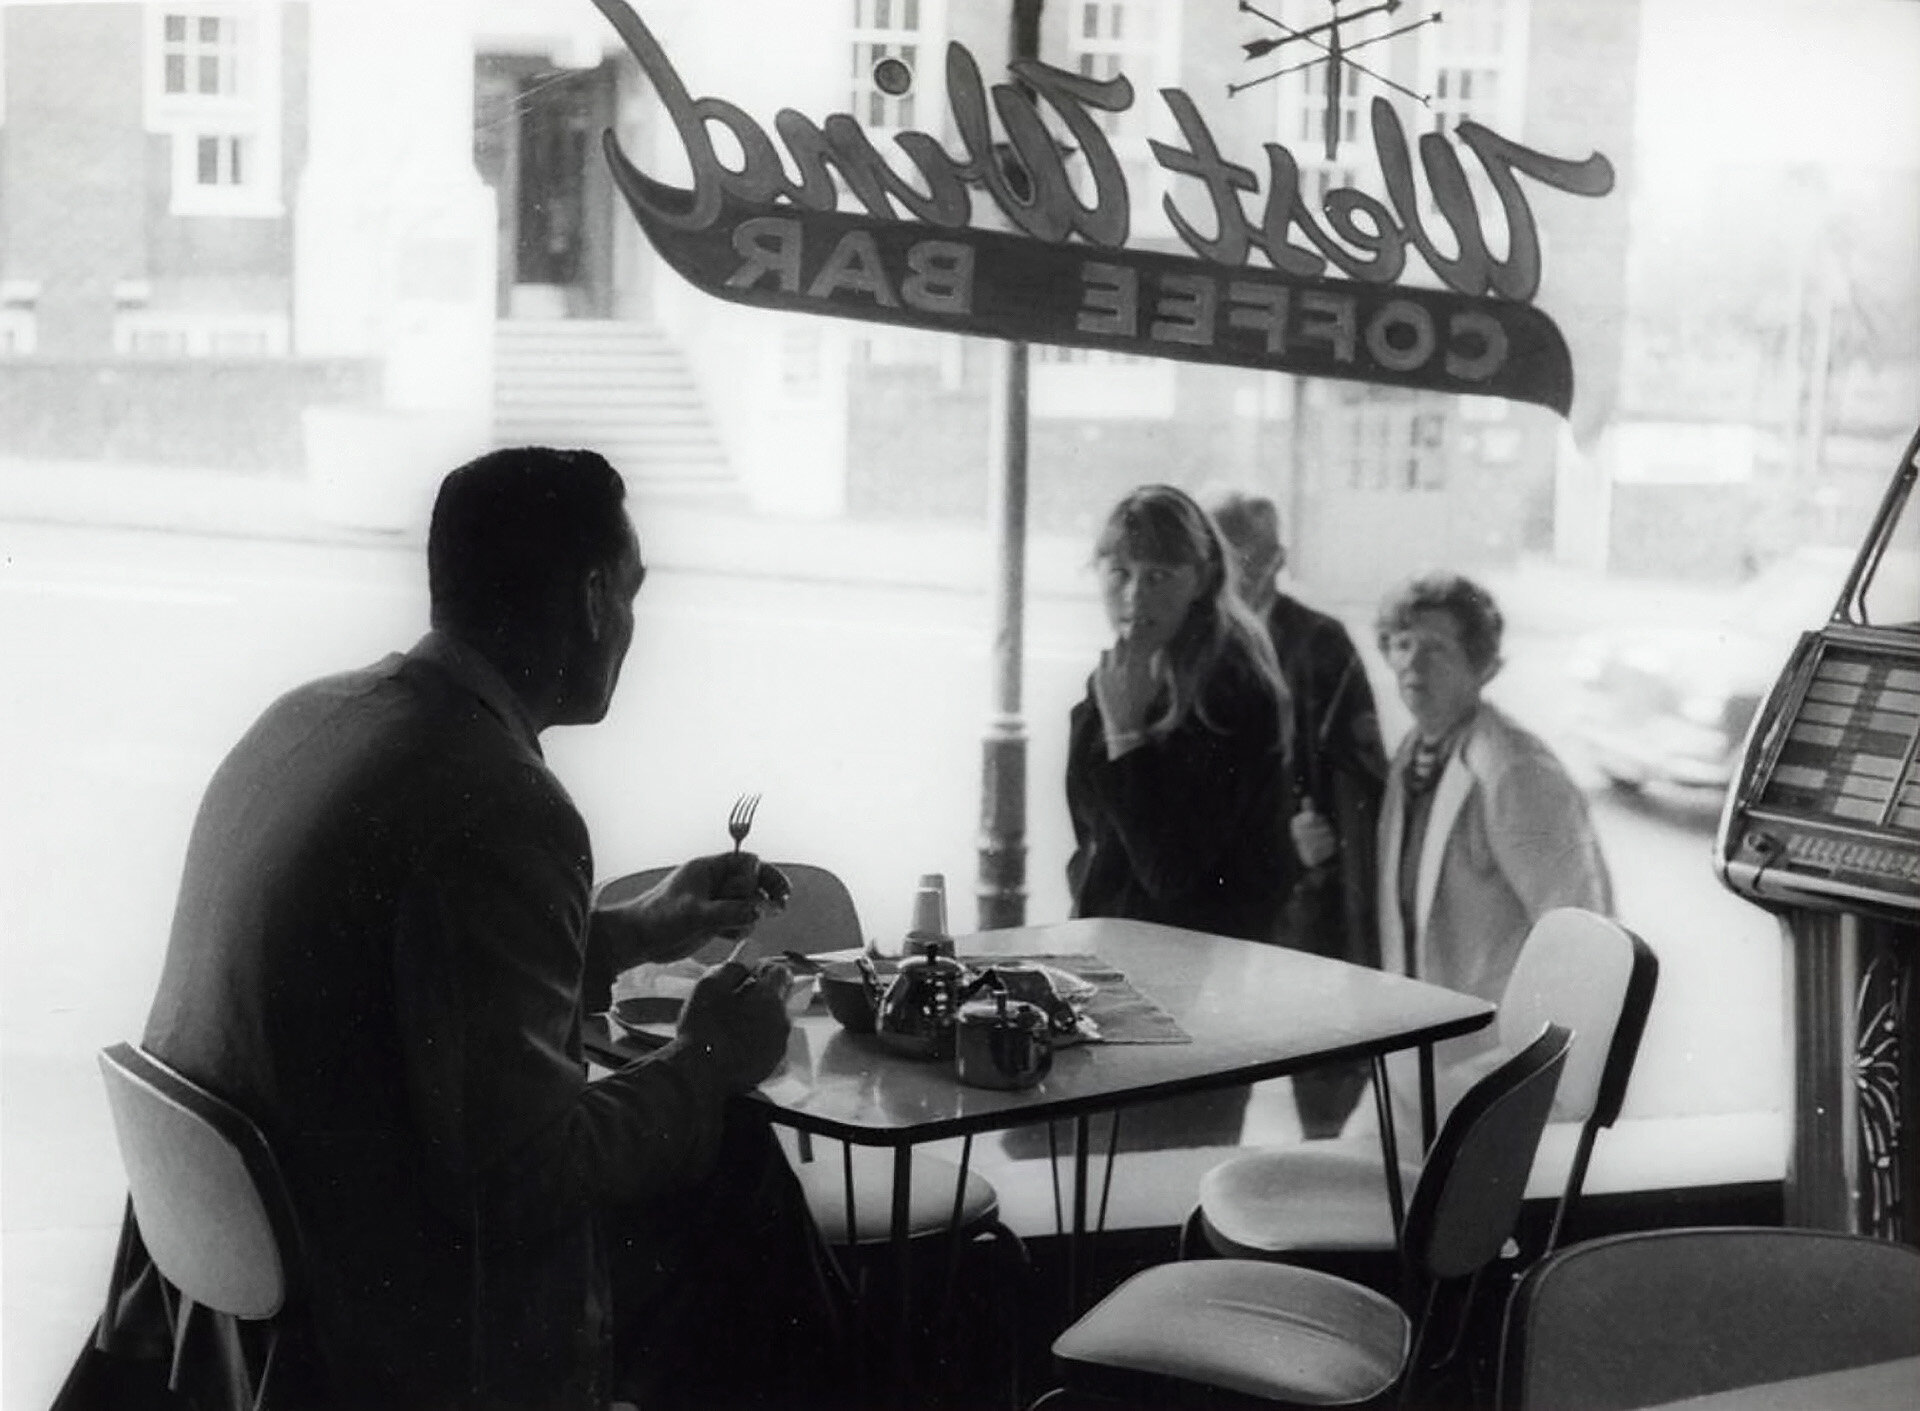  Max Oettli,  West Wind Coffee Bar , 1968 